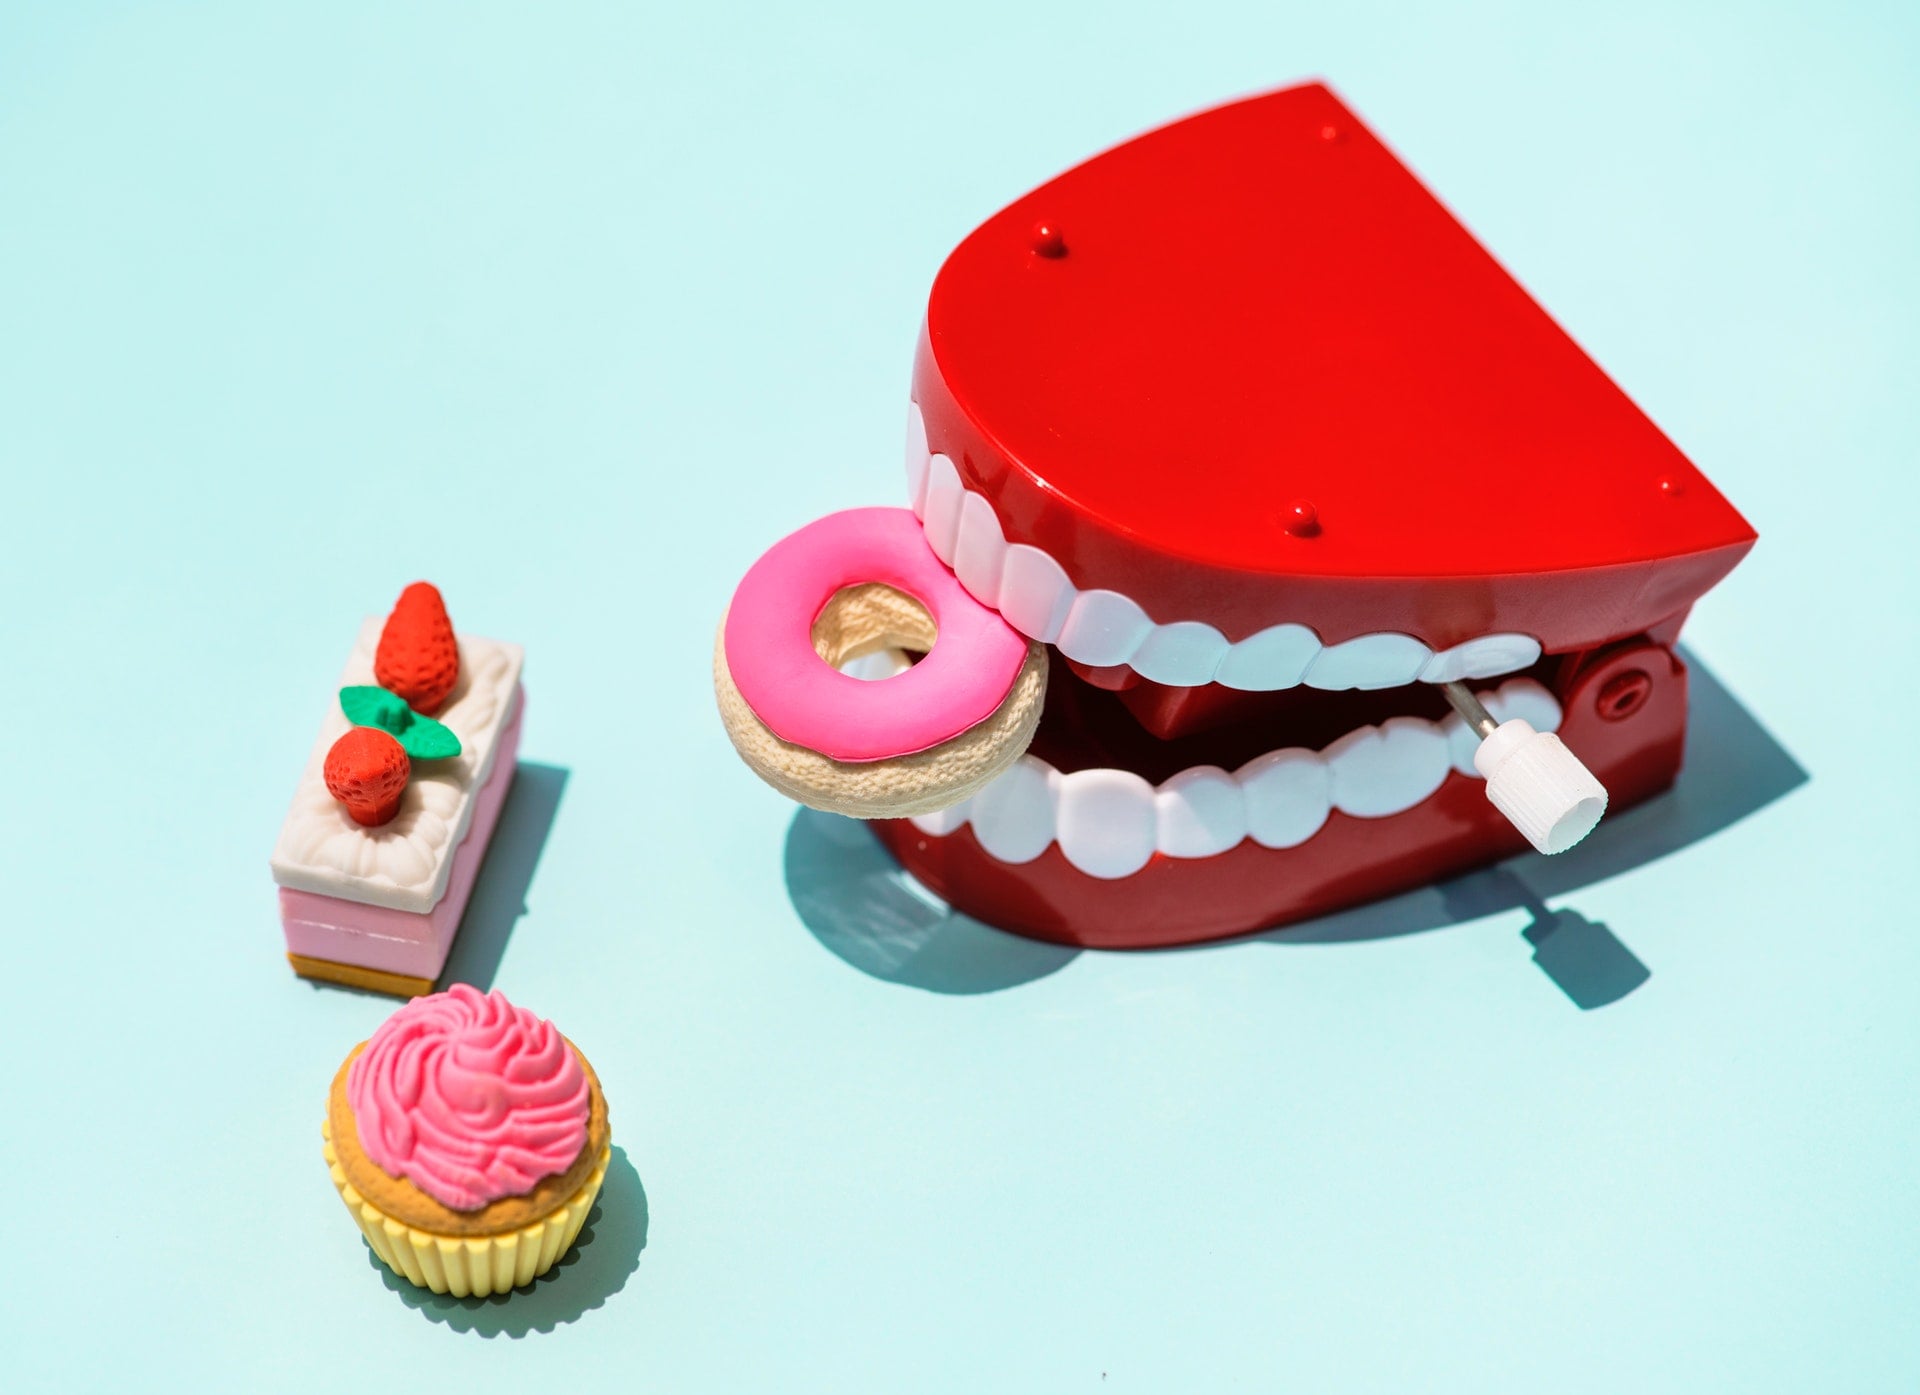 葡萄柚與藥物一起吃對人體造成危害 sweet cake candy mouth plastic toy food plastic toys teeth